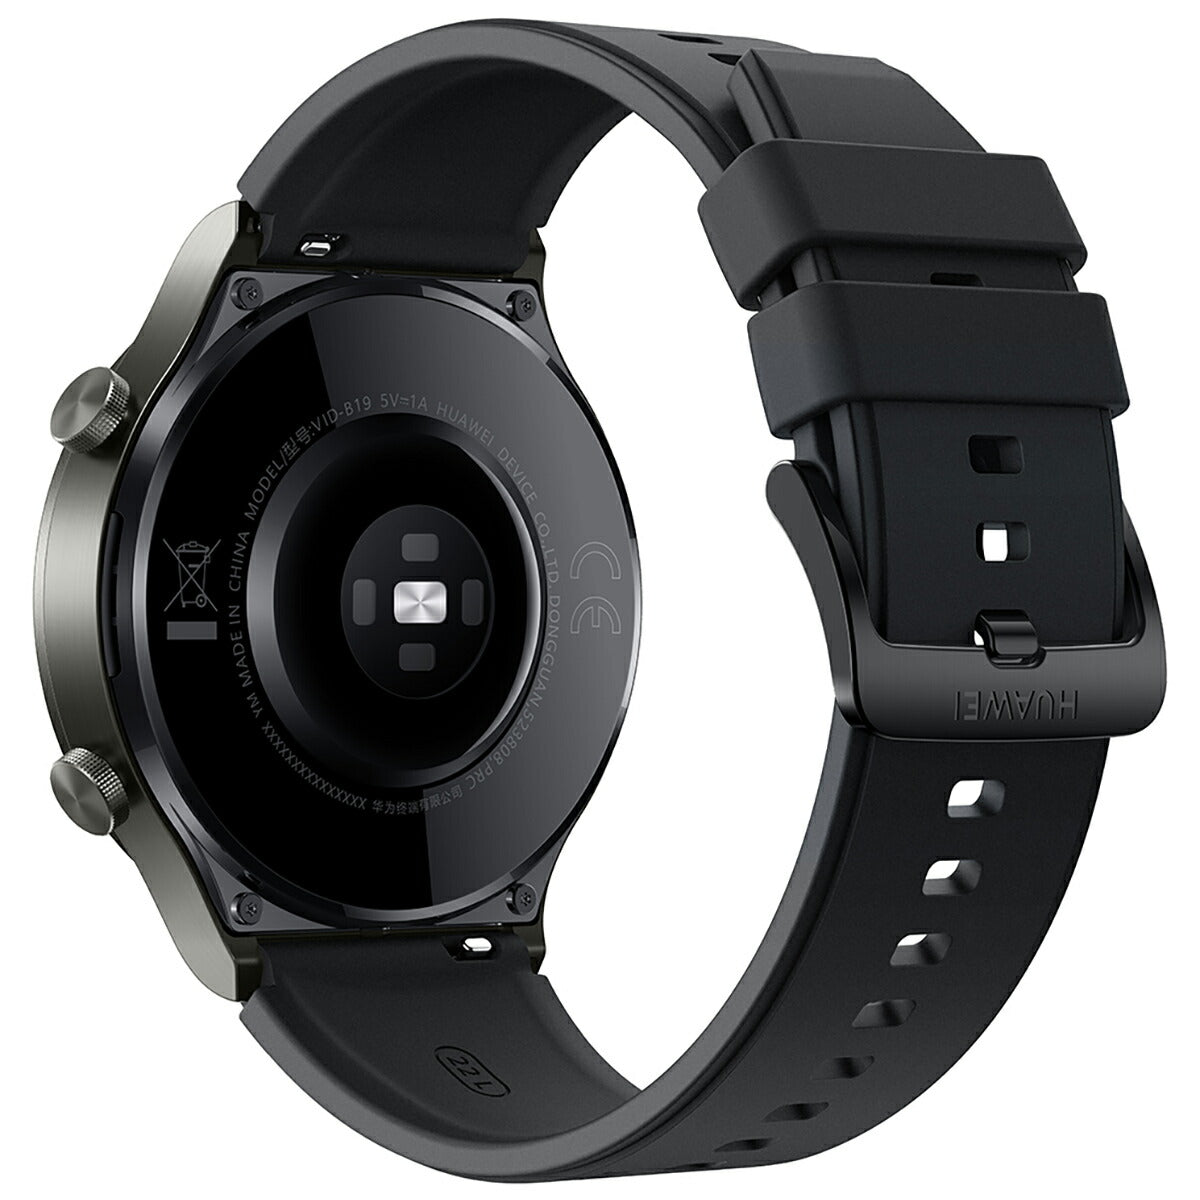 ファーウェイ HUAWEI スマートウォッチ WATCH GT 2 Pro Night Black ナイトブラック GPS 腕時計 メンズ レディース ウェアラブル 血中酸素 通話機能 HV8W000090